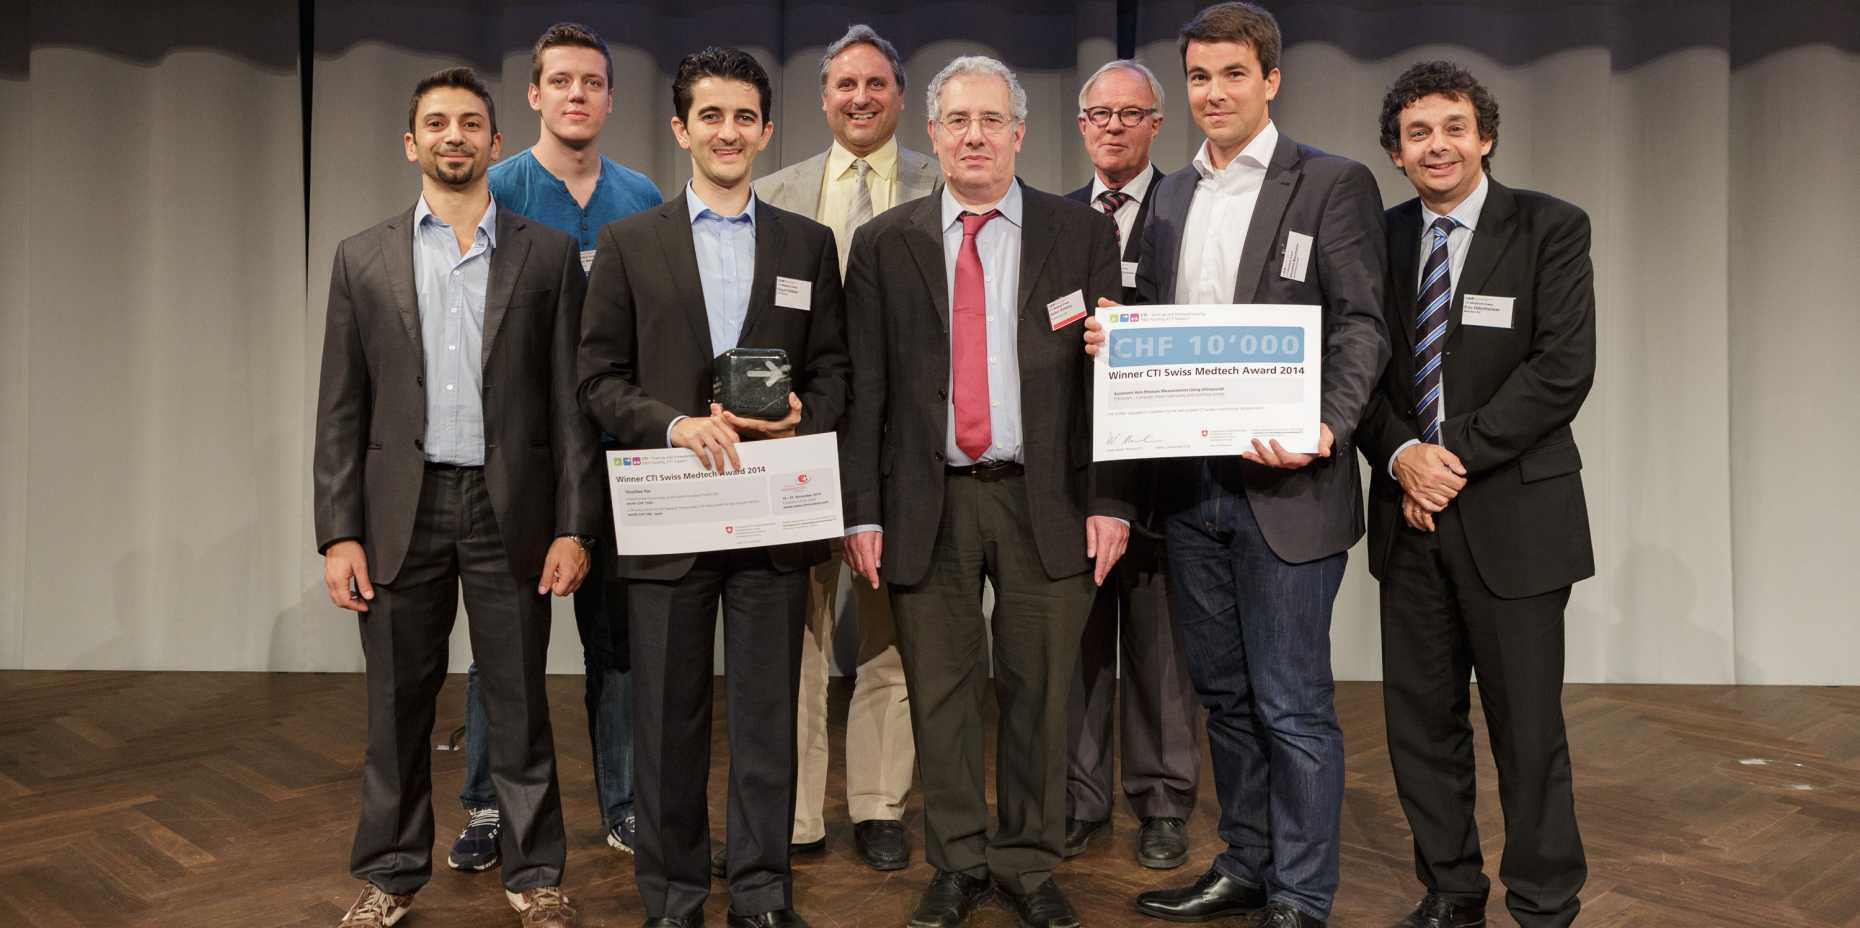 Vergr?sserte Ansicht: Firma Veinpress gewinnt KTI Swiss Medtech Award